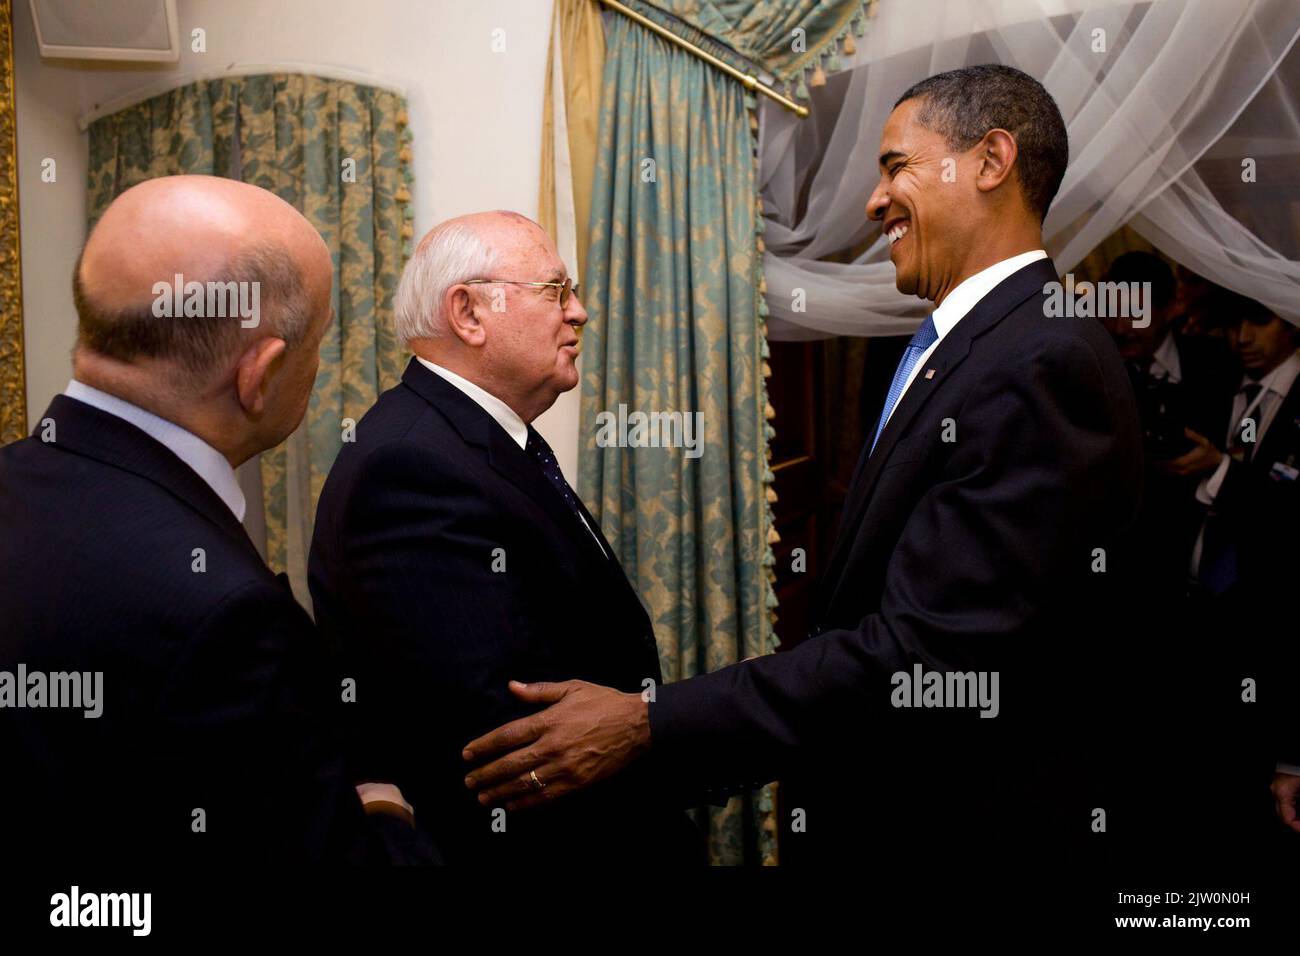 Gostinny Dvor, Russland - 7. Juli 2009 -- US-Präsident Barack Obama trifft am Dienstag, den 7. Juli 2009, in Gostinny Dvor, Russland, mit dem ehemaligen russischen Präsidenten Michail Gorbatschow zusammen Stockfoto